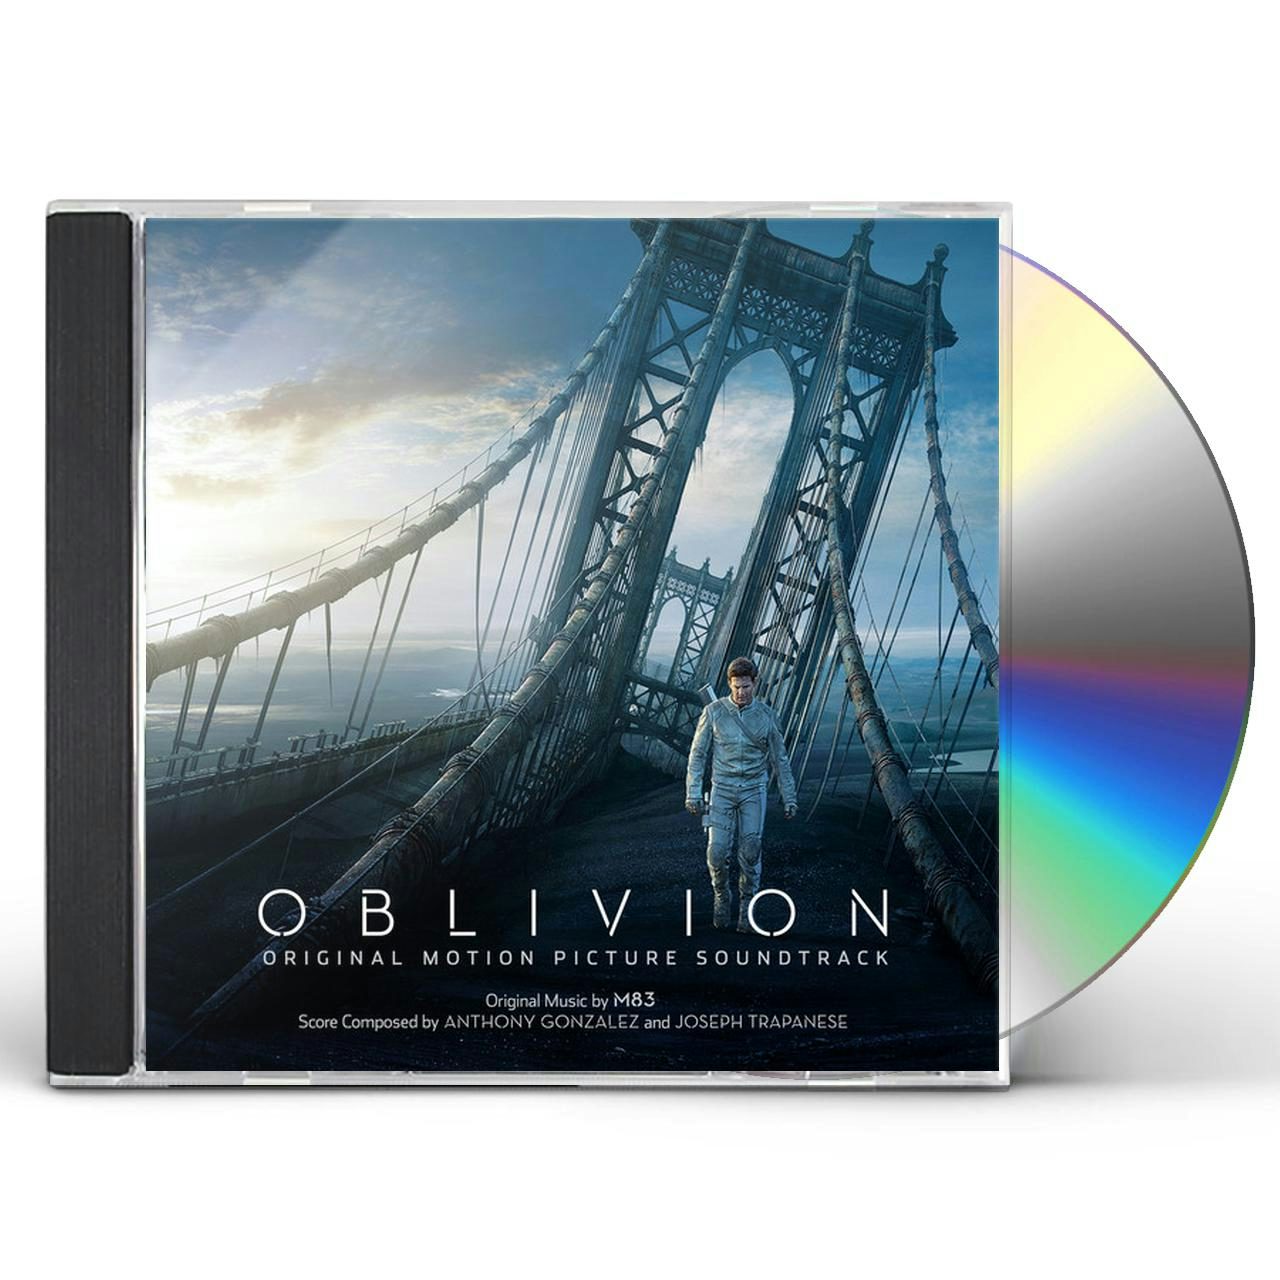 CD】オブリビオン オリジナルサウンドトラック - CD